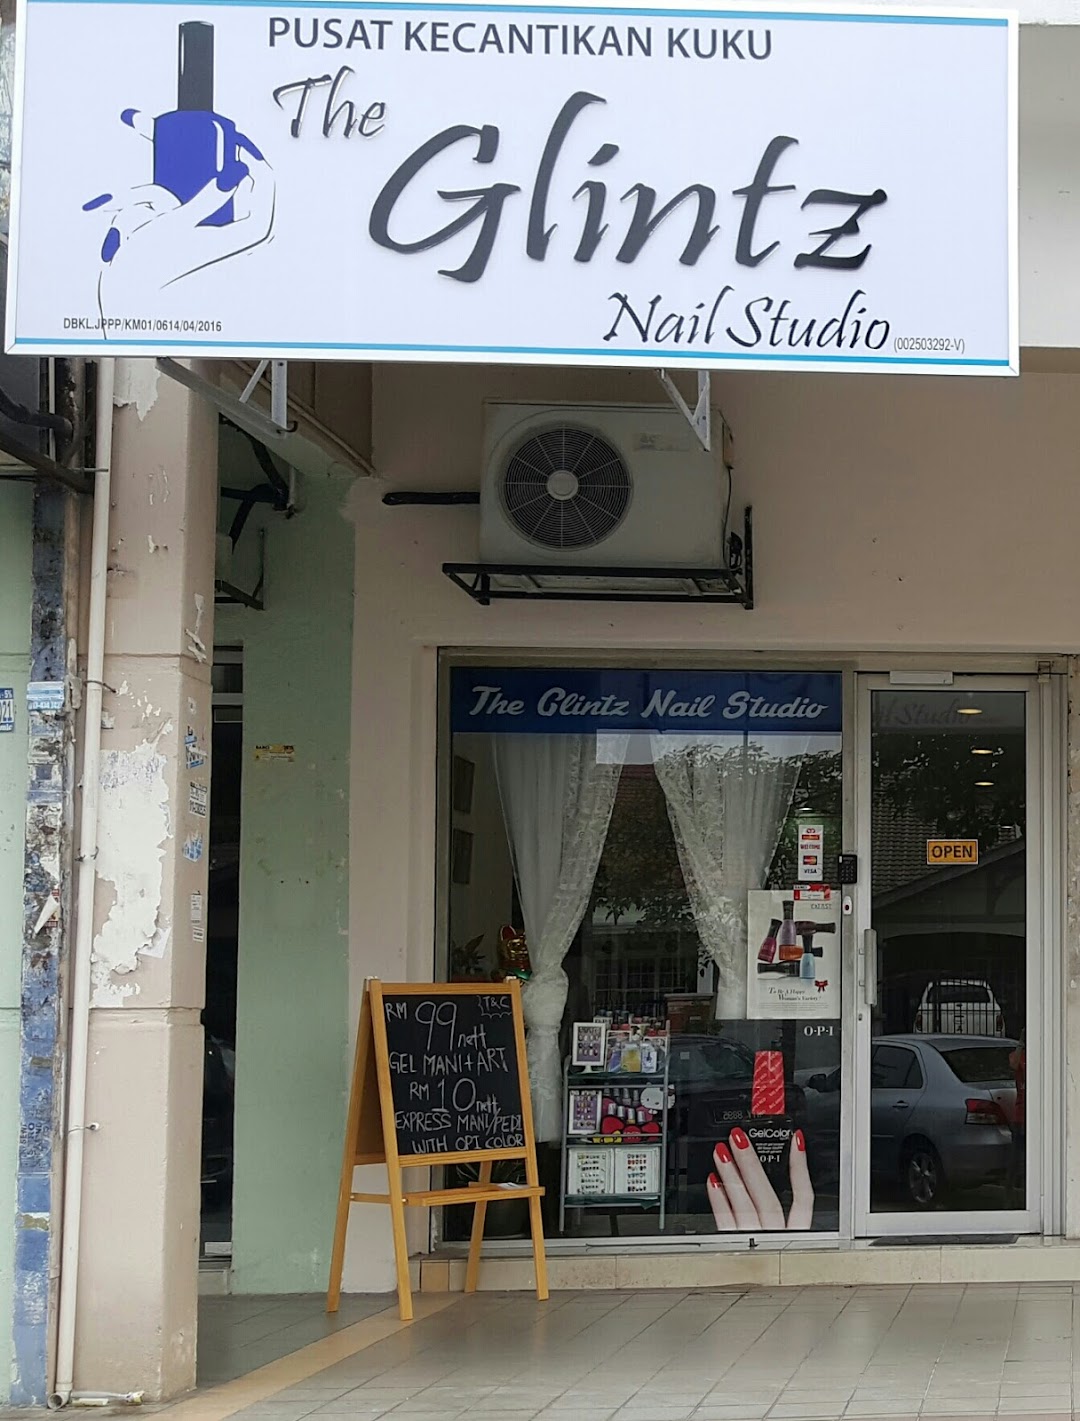 The Glintz Nail Studio